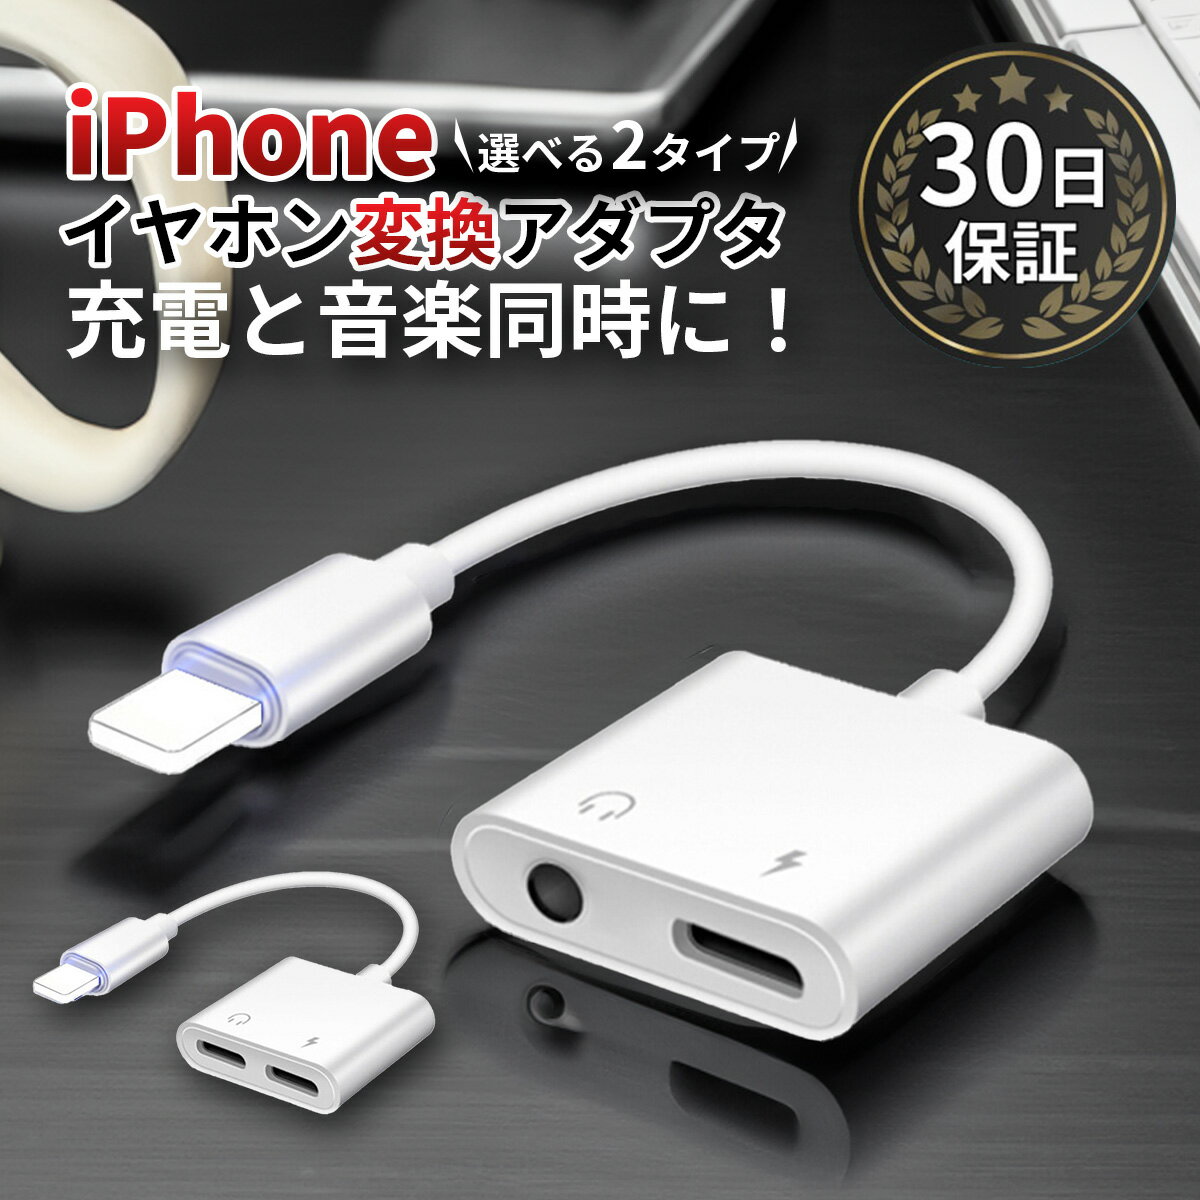 iPhone イヤホン 変換アダプタ 変換ケーブル 充電 3